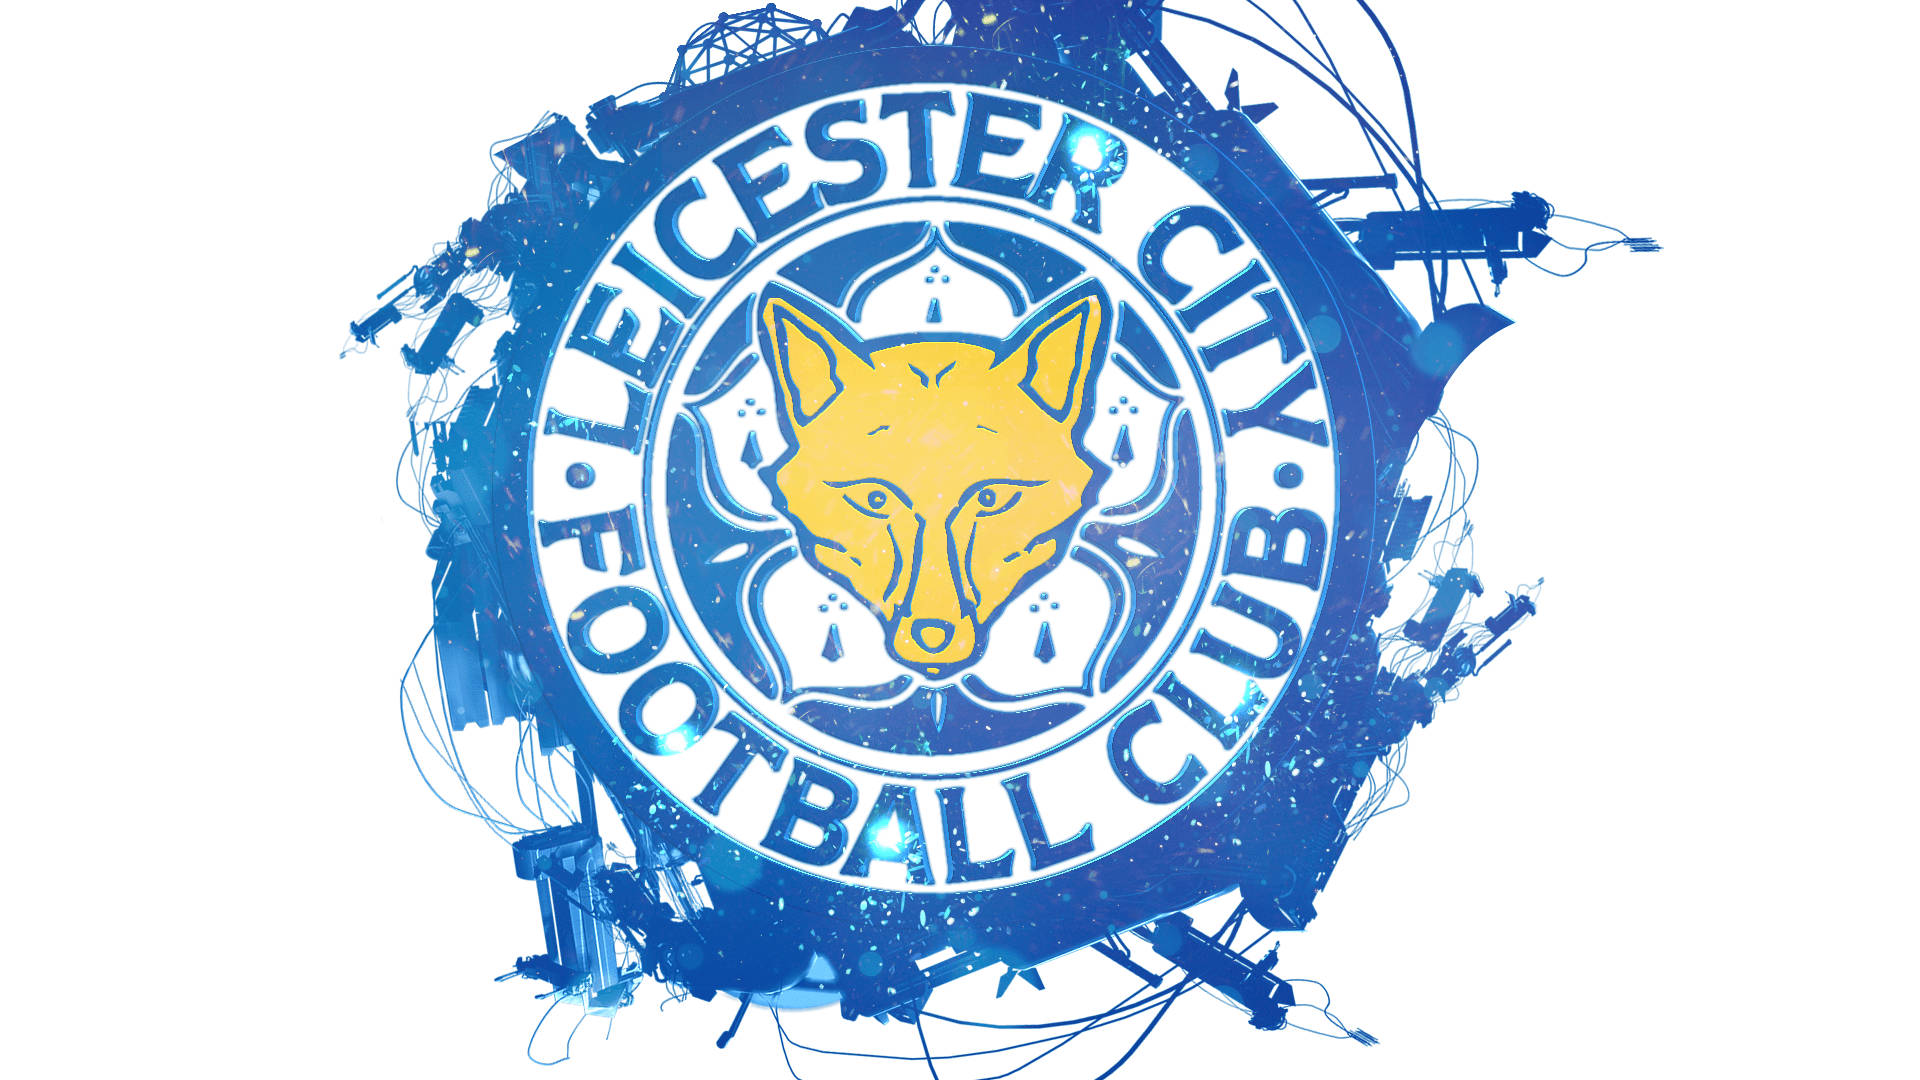 Leicesterstadtbild-logo Wallpaper